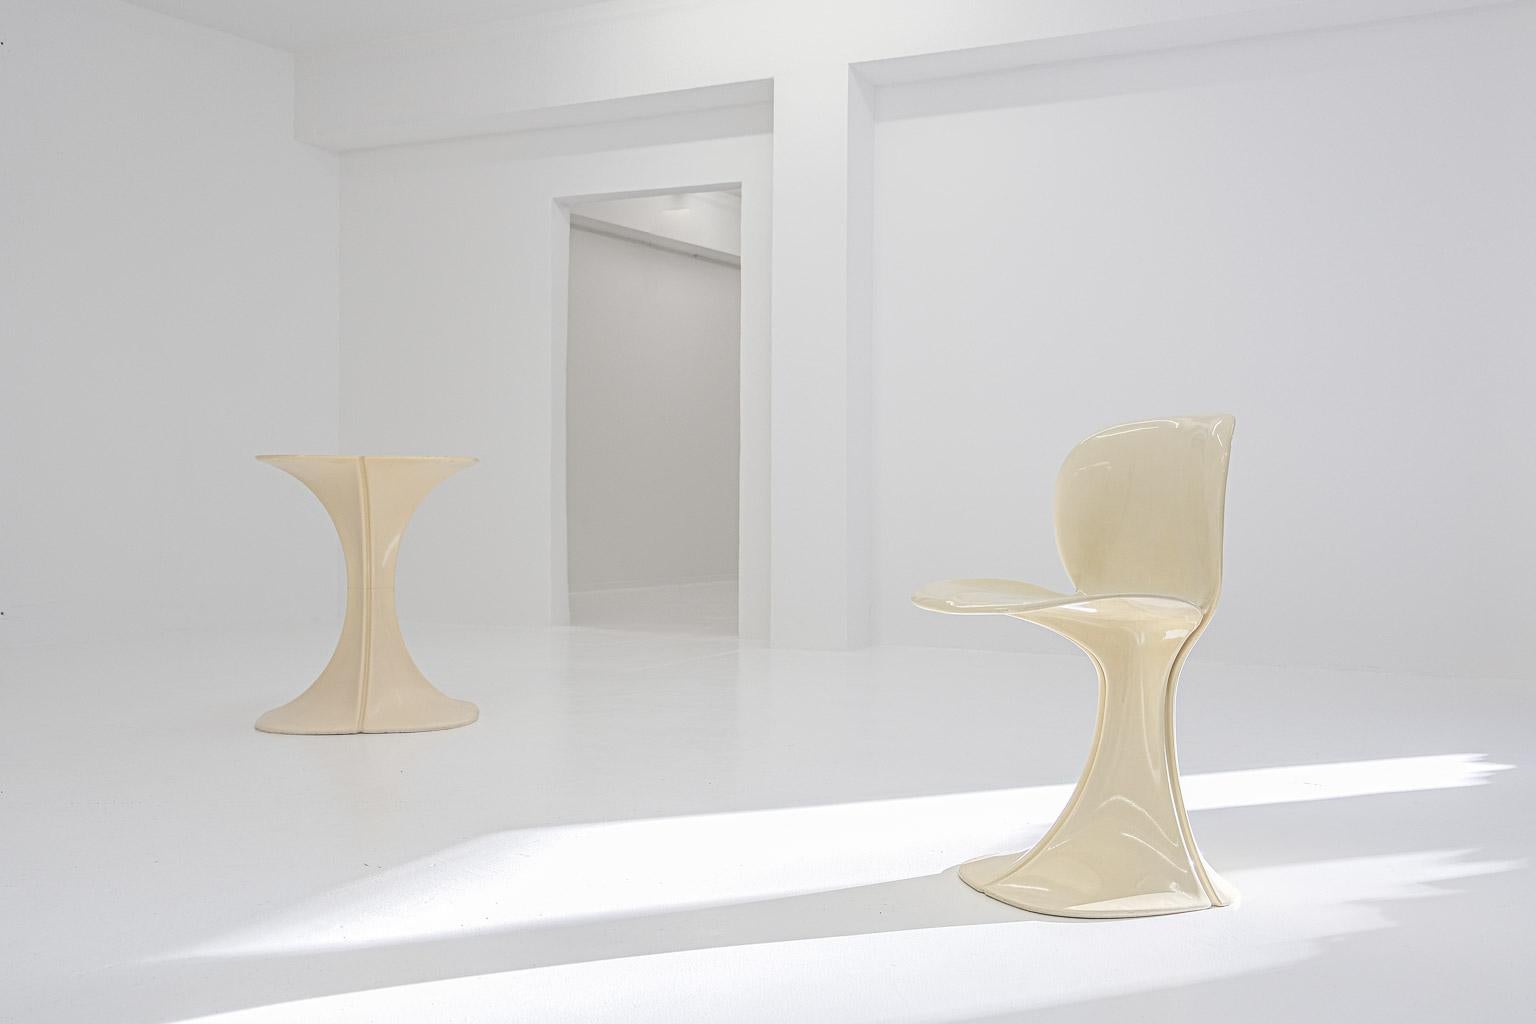 Fabriqués à l'origine comme meubles d'extérieur en 1972, ce modèle 8810 de table et de chaise à fleurs est aujourd'hui une pièce emblématique très rare et recherchée de l'histoire du design plastique. Conçu par Pierre Paulin et produit par Boro